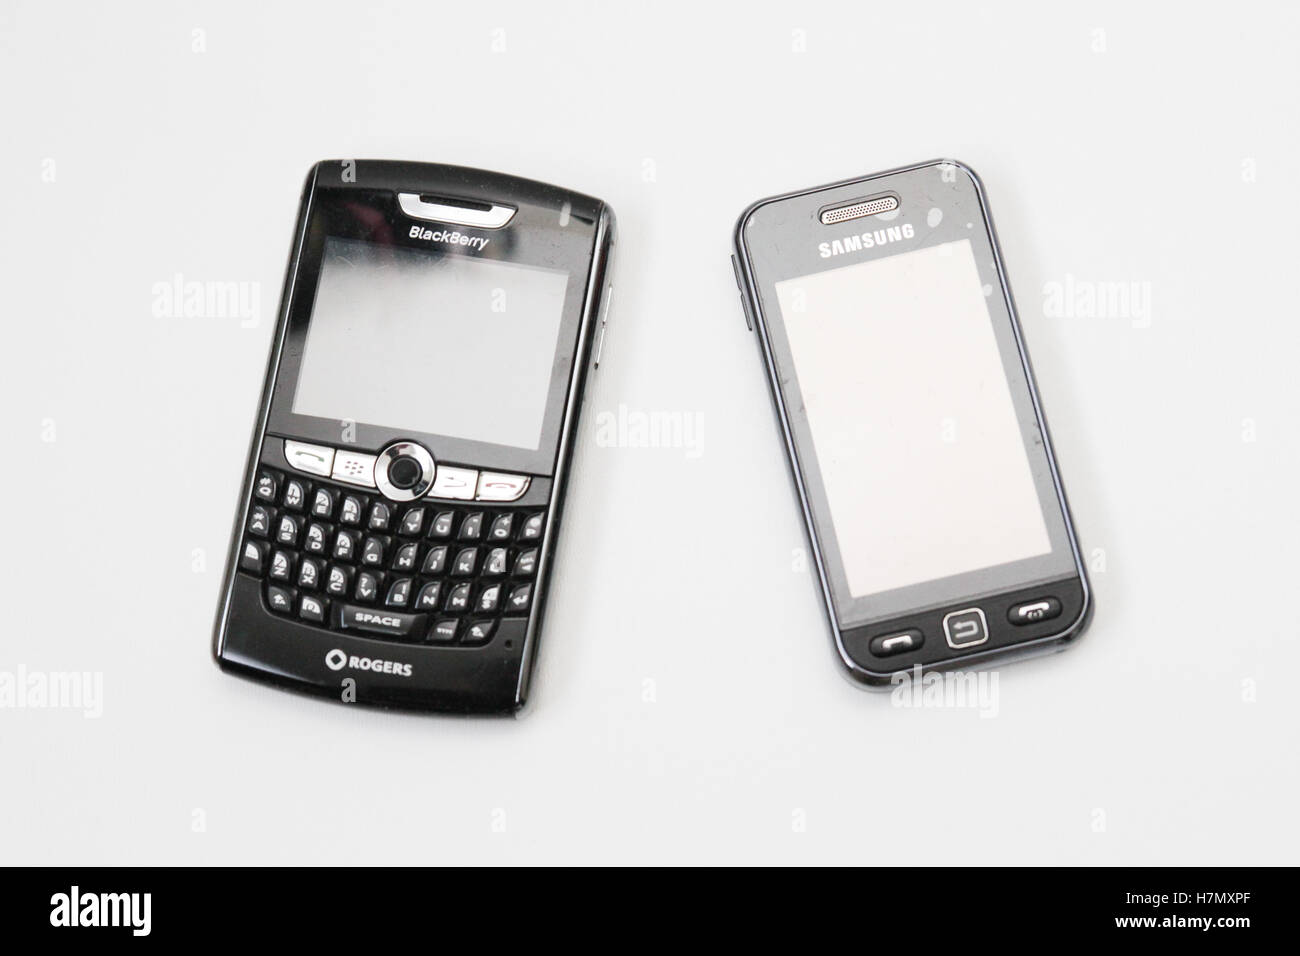 Teléfonos blackberry immagini e fotografie stock ad alta risoluzione - Alamy